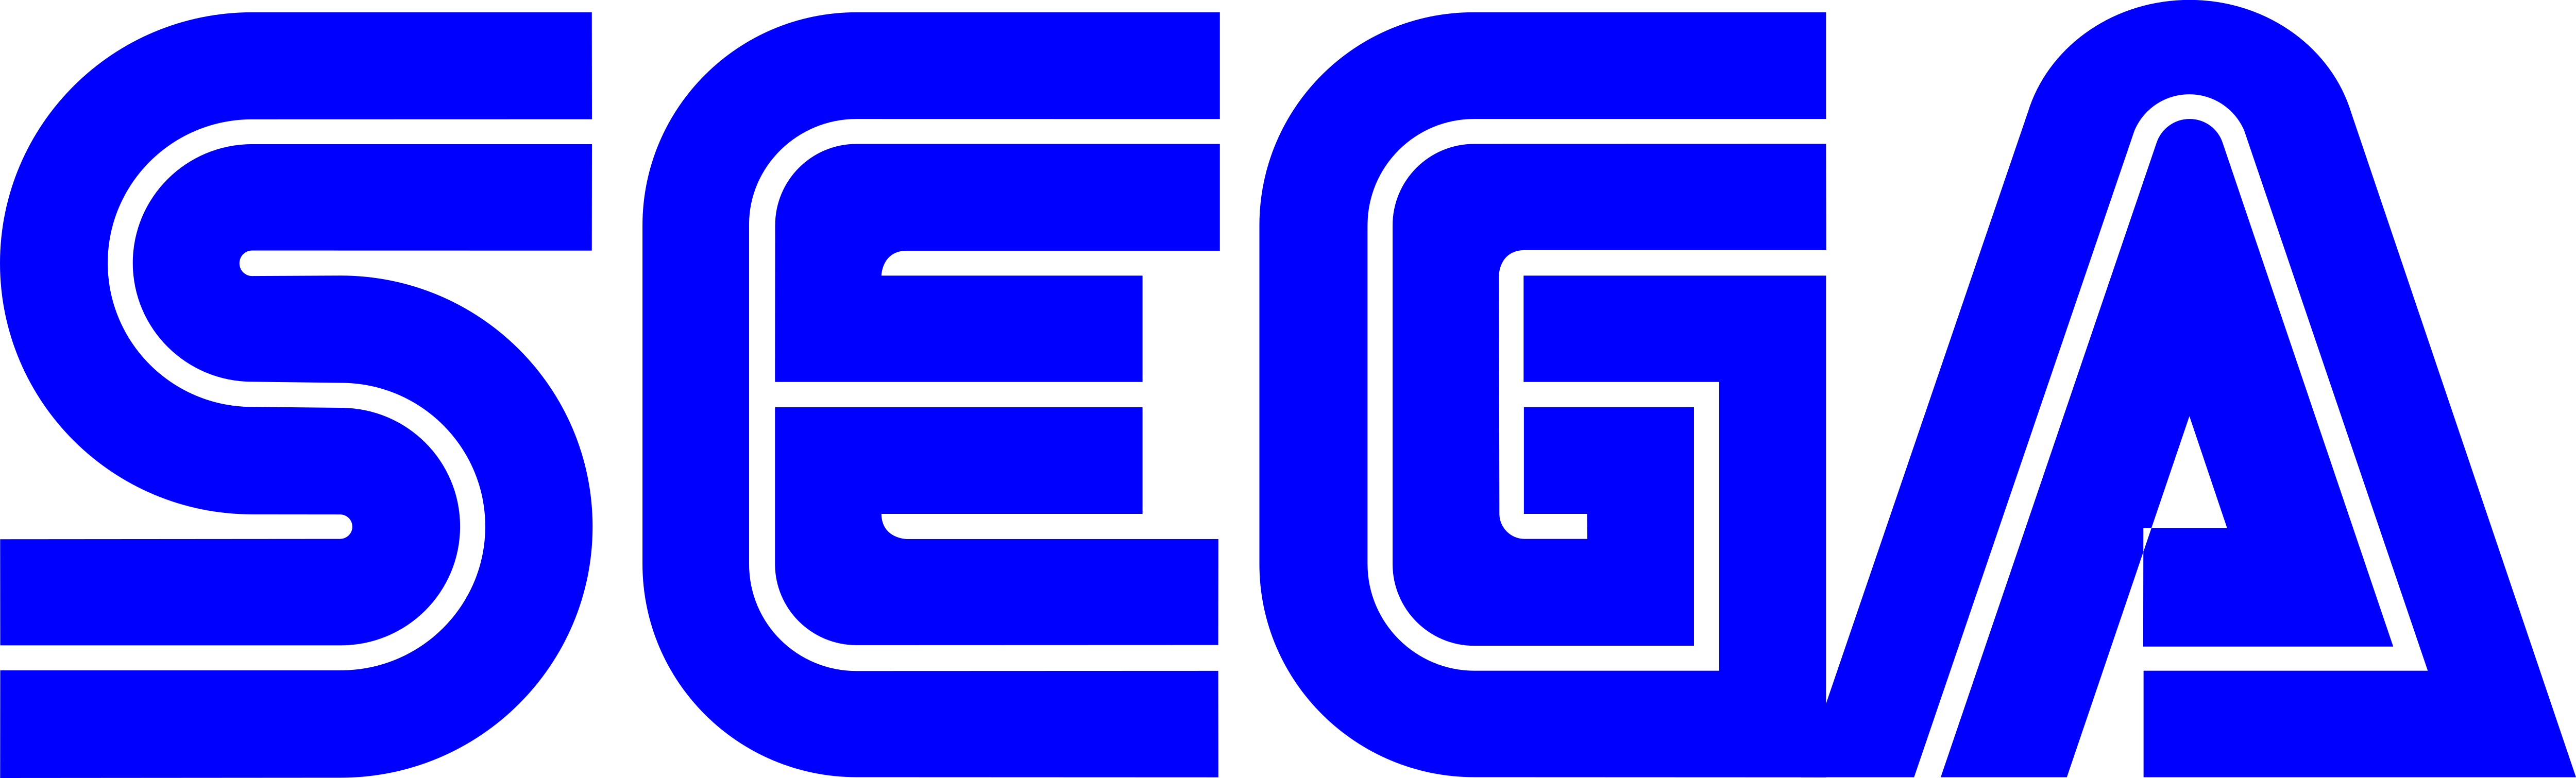 Sega Genesis Logo Png Downloa